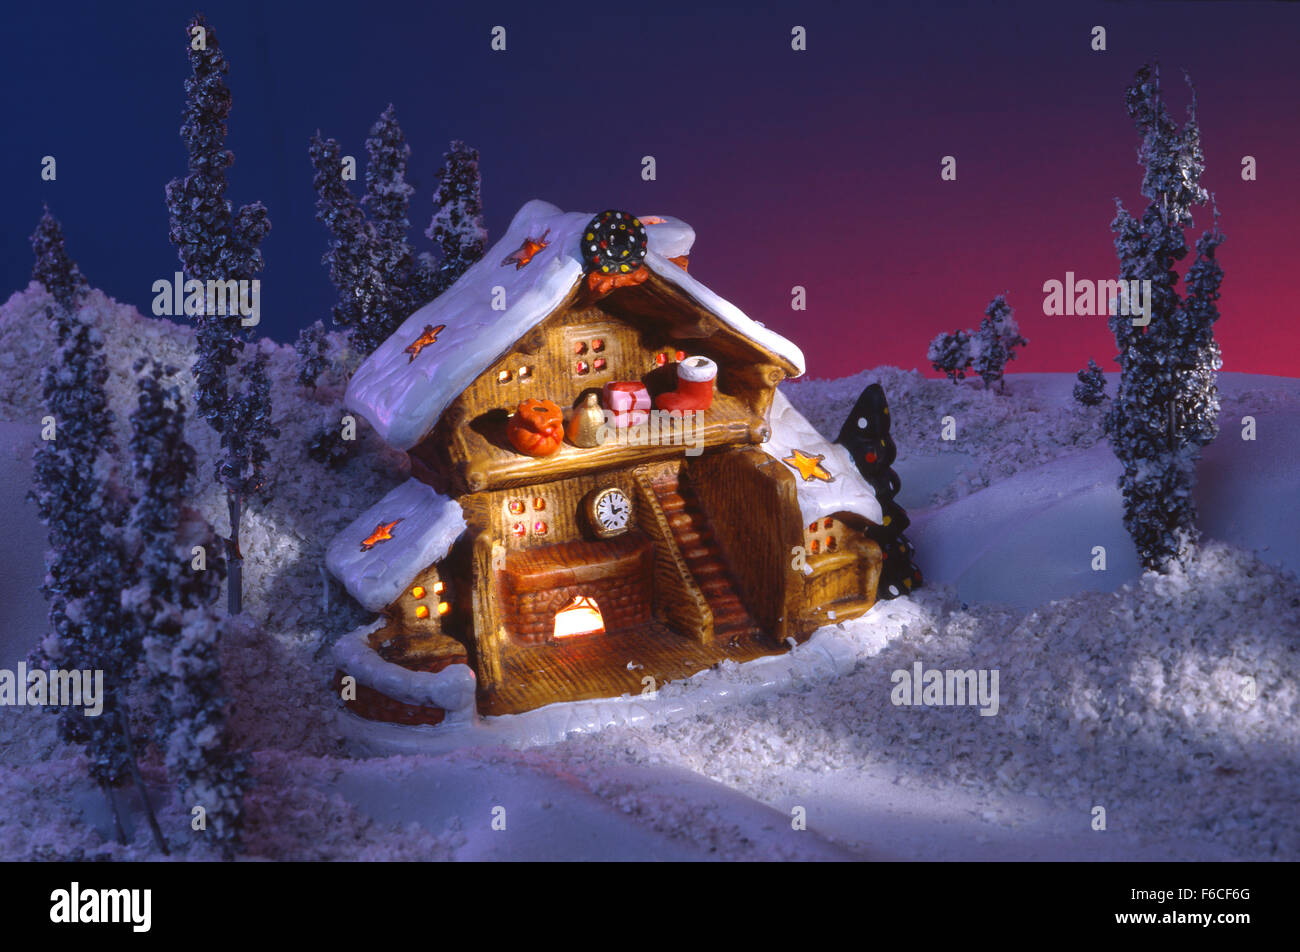 La nouvelle année de fête, Noël encore la vie d'un jouet fantastique lodge, la nuit dans le bois. bleu ciel, fond bleu, bleu foncé. Banque D'Images